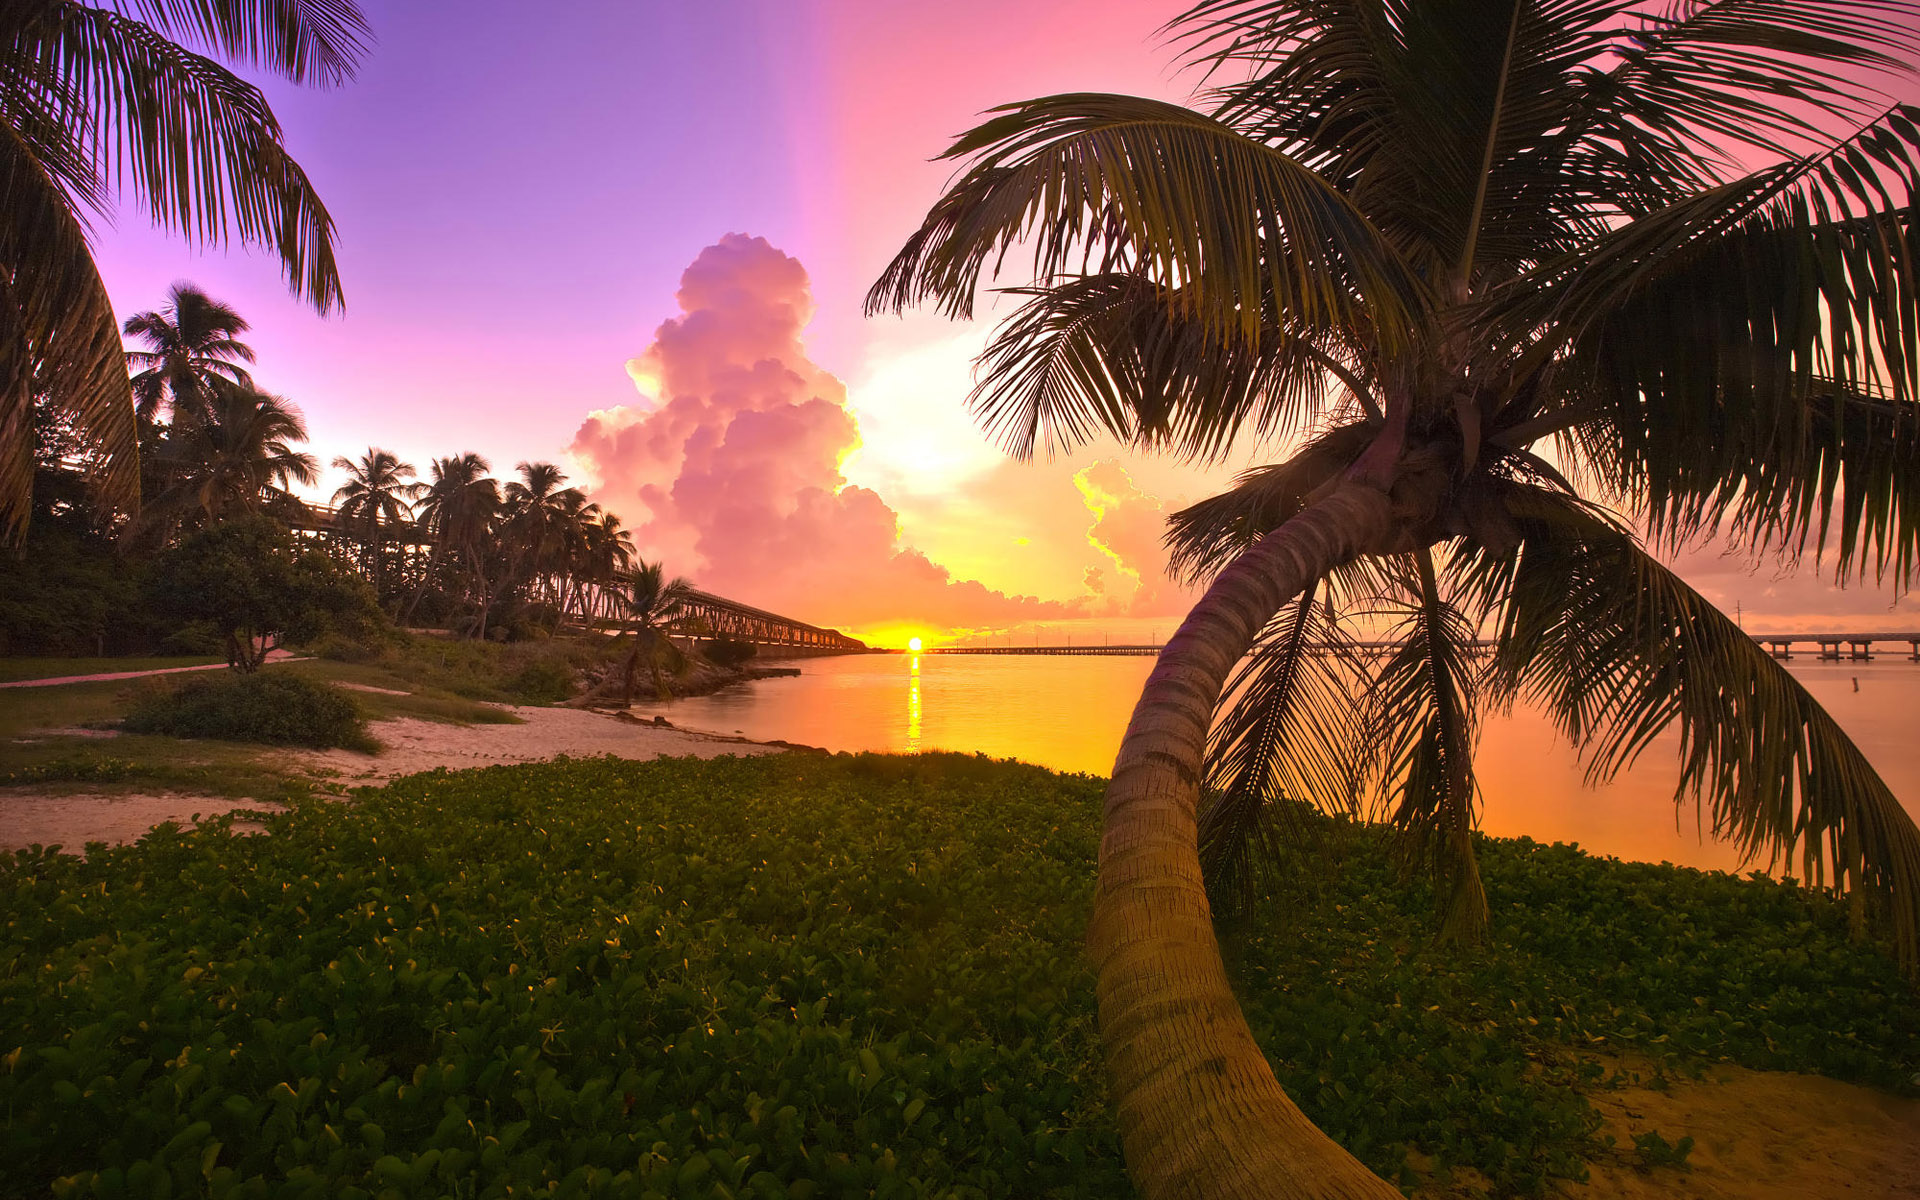  USA bridge palm Florida Key West Key West sunset Florida